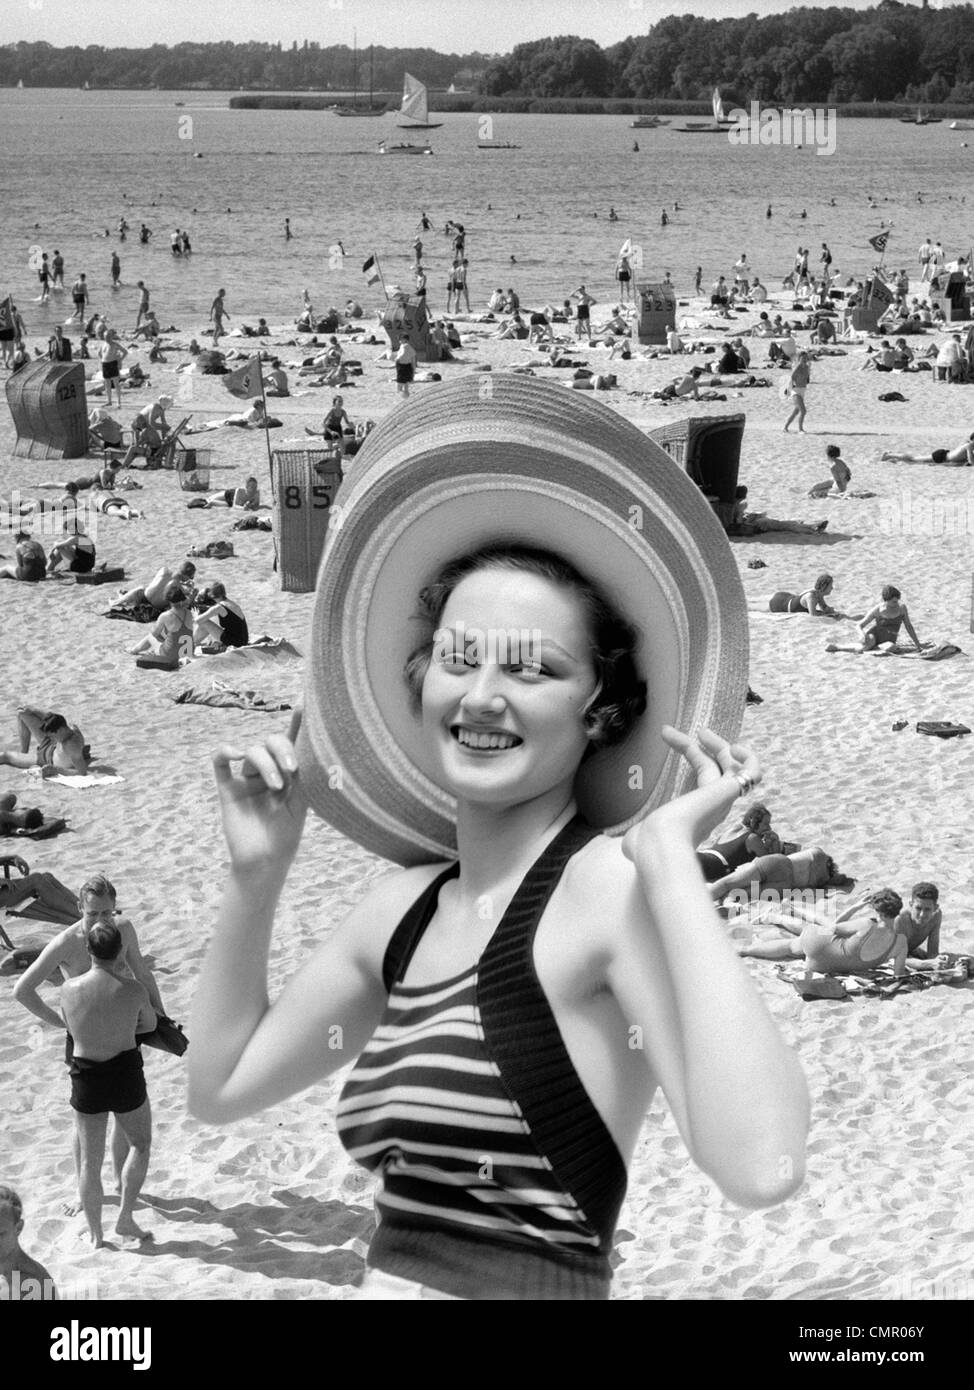 1930s VACANZA MONTAGE ritratto donna sorridente IN COSTUME DA BAGNO indossando grande cappello di paglia e la scena della spiaggia affollata Foto Stock